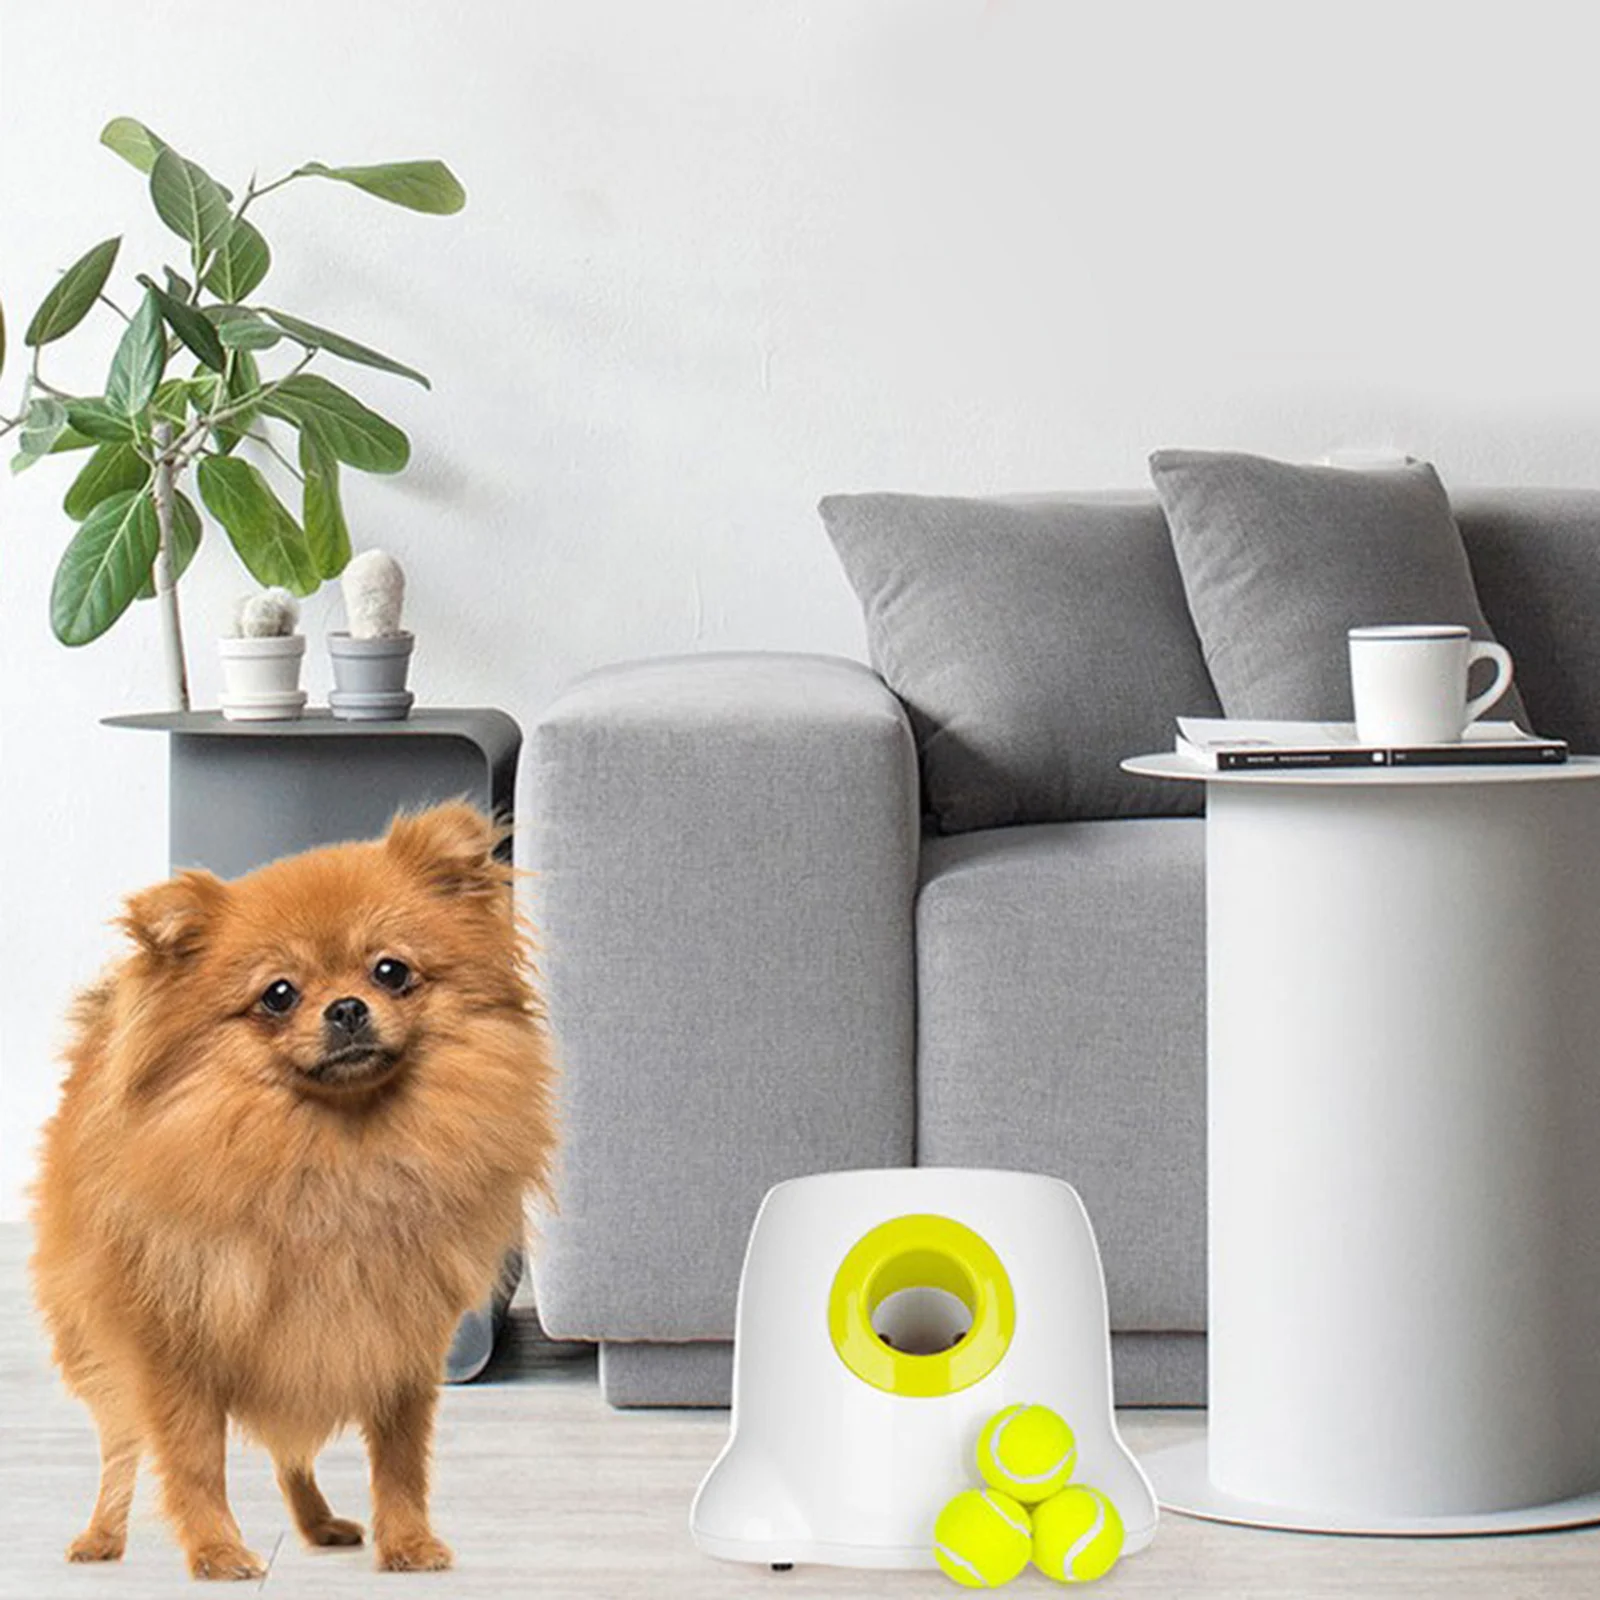 

Автоматическая пусковая установка для мячей Интерактивная собака, метательная машина для теннисных мячей для собак размера S M L, 3 мяча и рег...